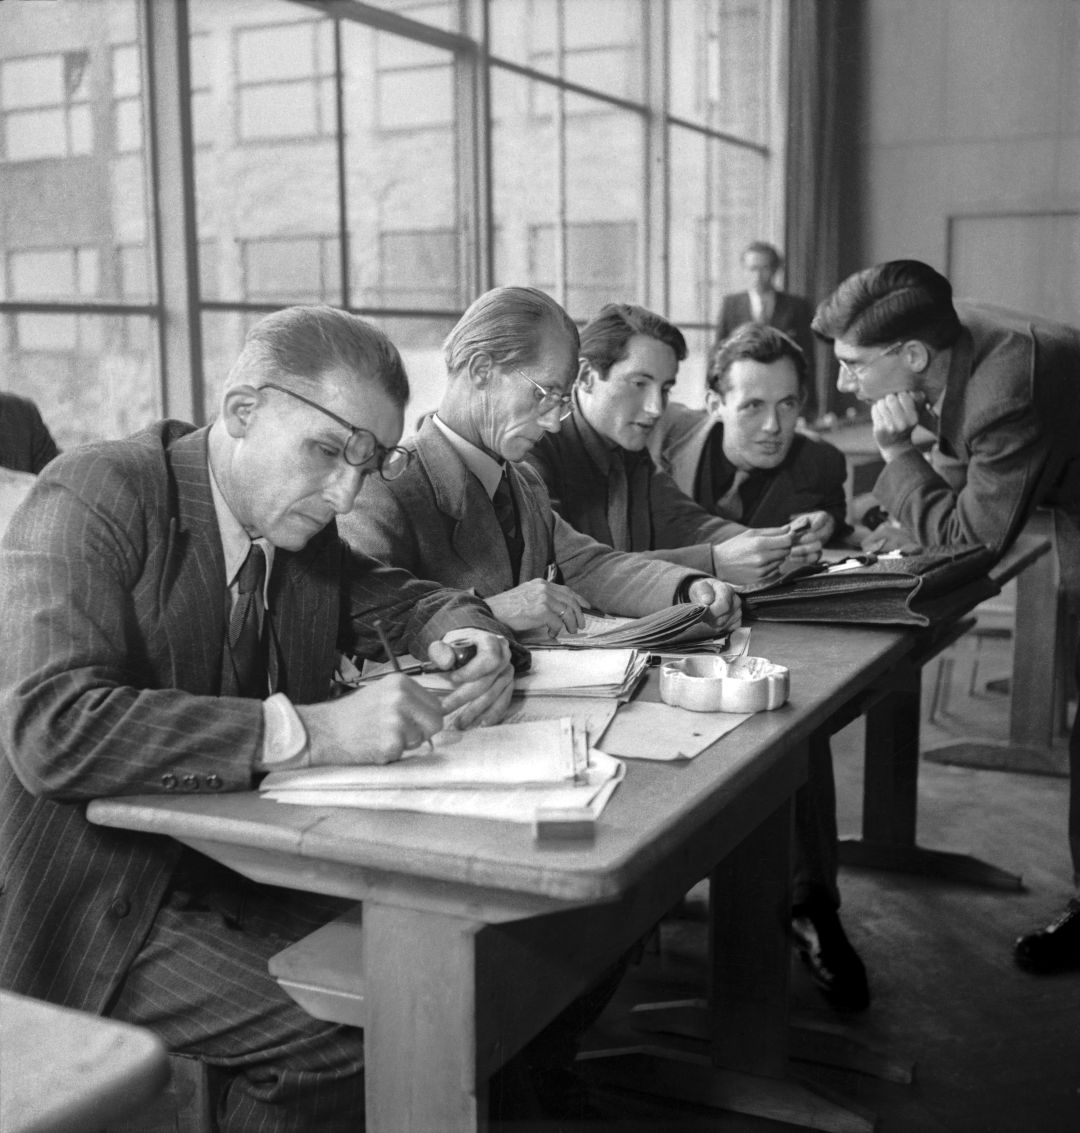 Auf dem historischen Foto sitzen vier Männer in Anzügen an einem Tisch. Einer schreibt, einer liest und zwei unterhalten sich mit einem weiteren Mann, der neben dem Tisch steht und sich zu ihnen herunterbeugt.